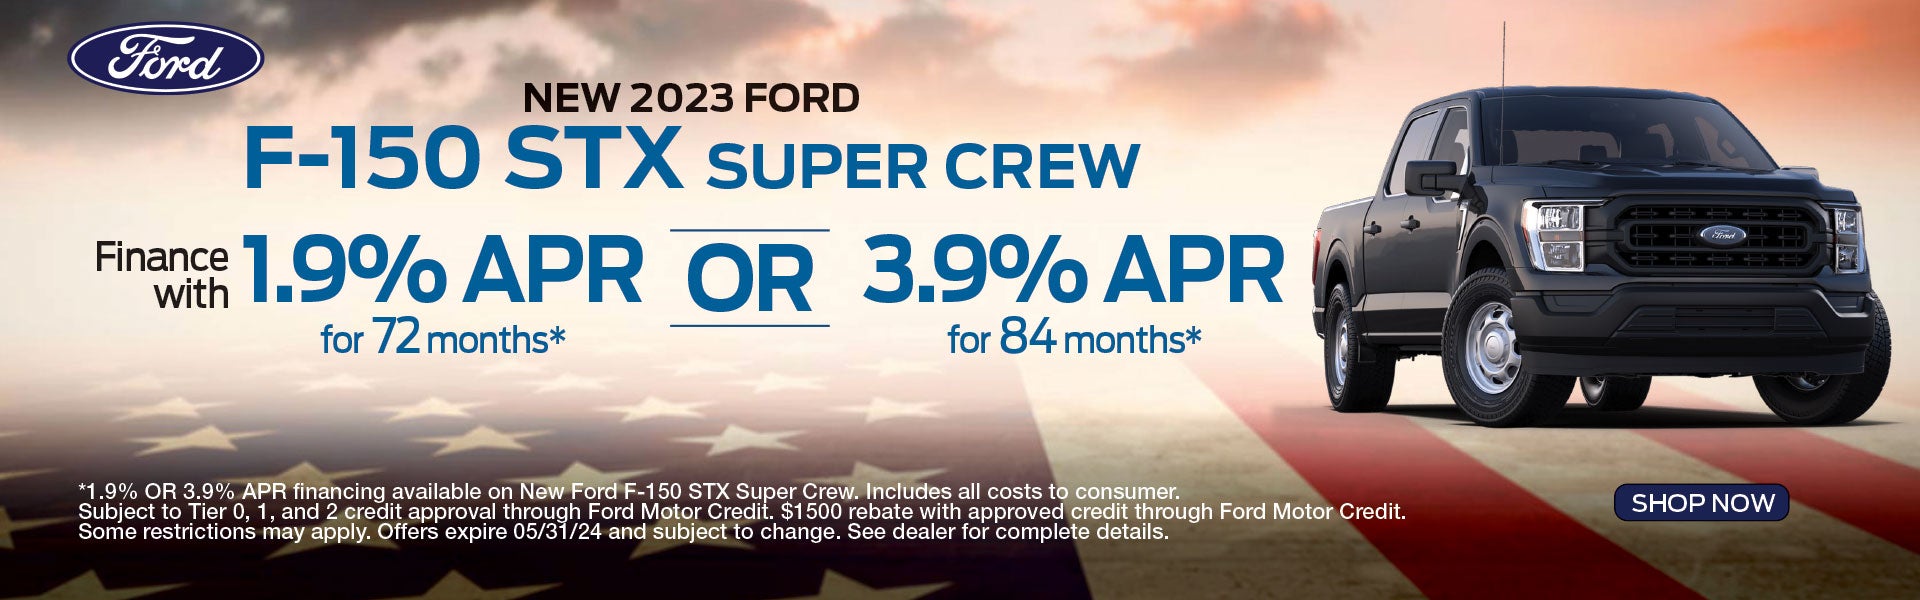 2023 Ford F-150 STX Super Crew